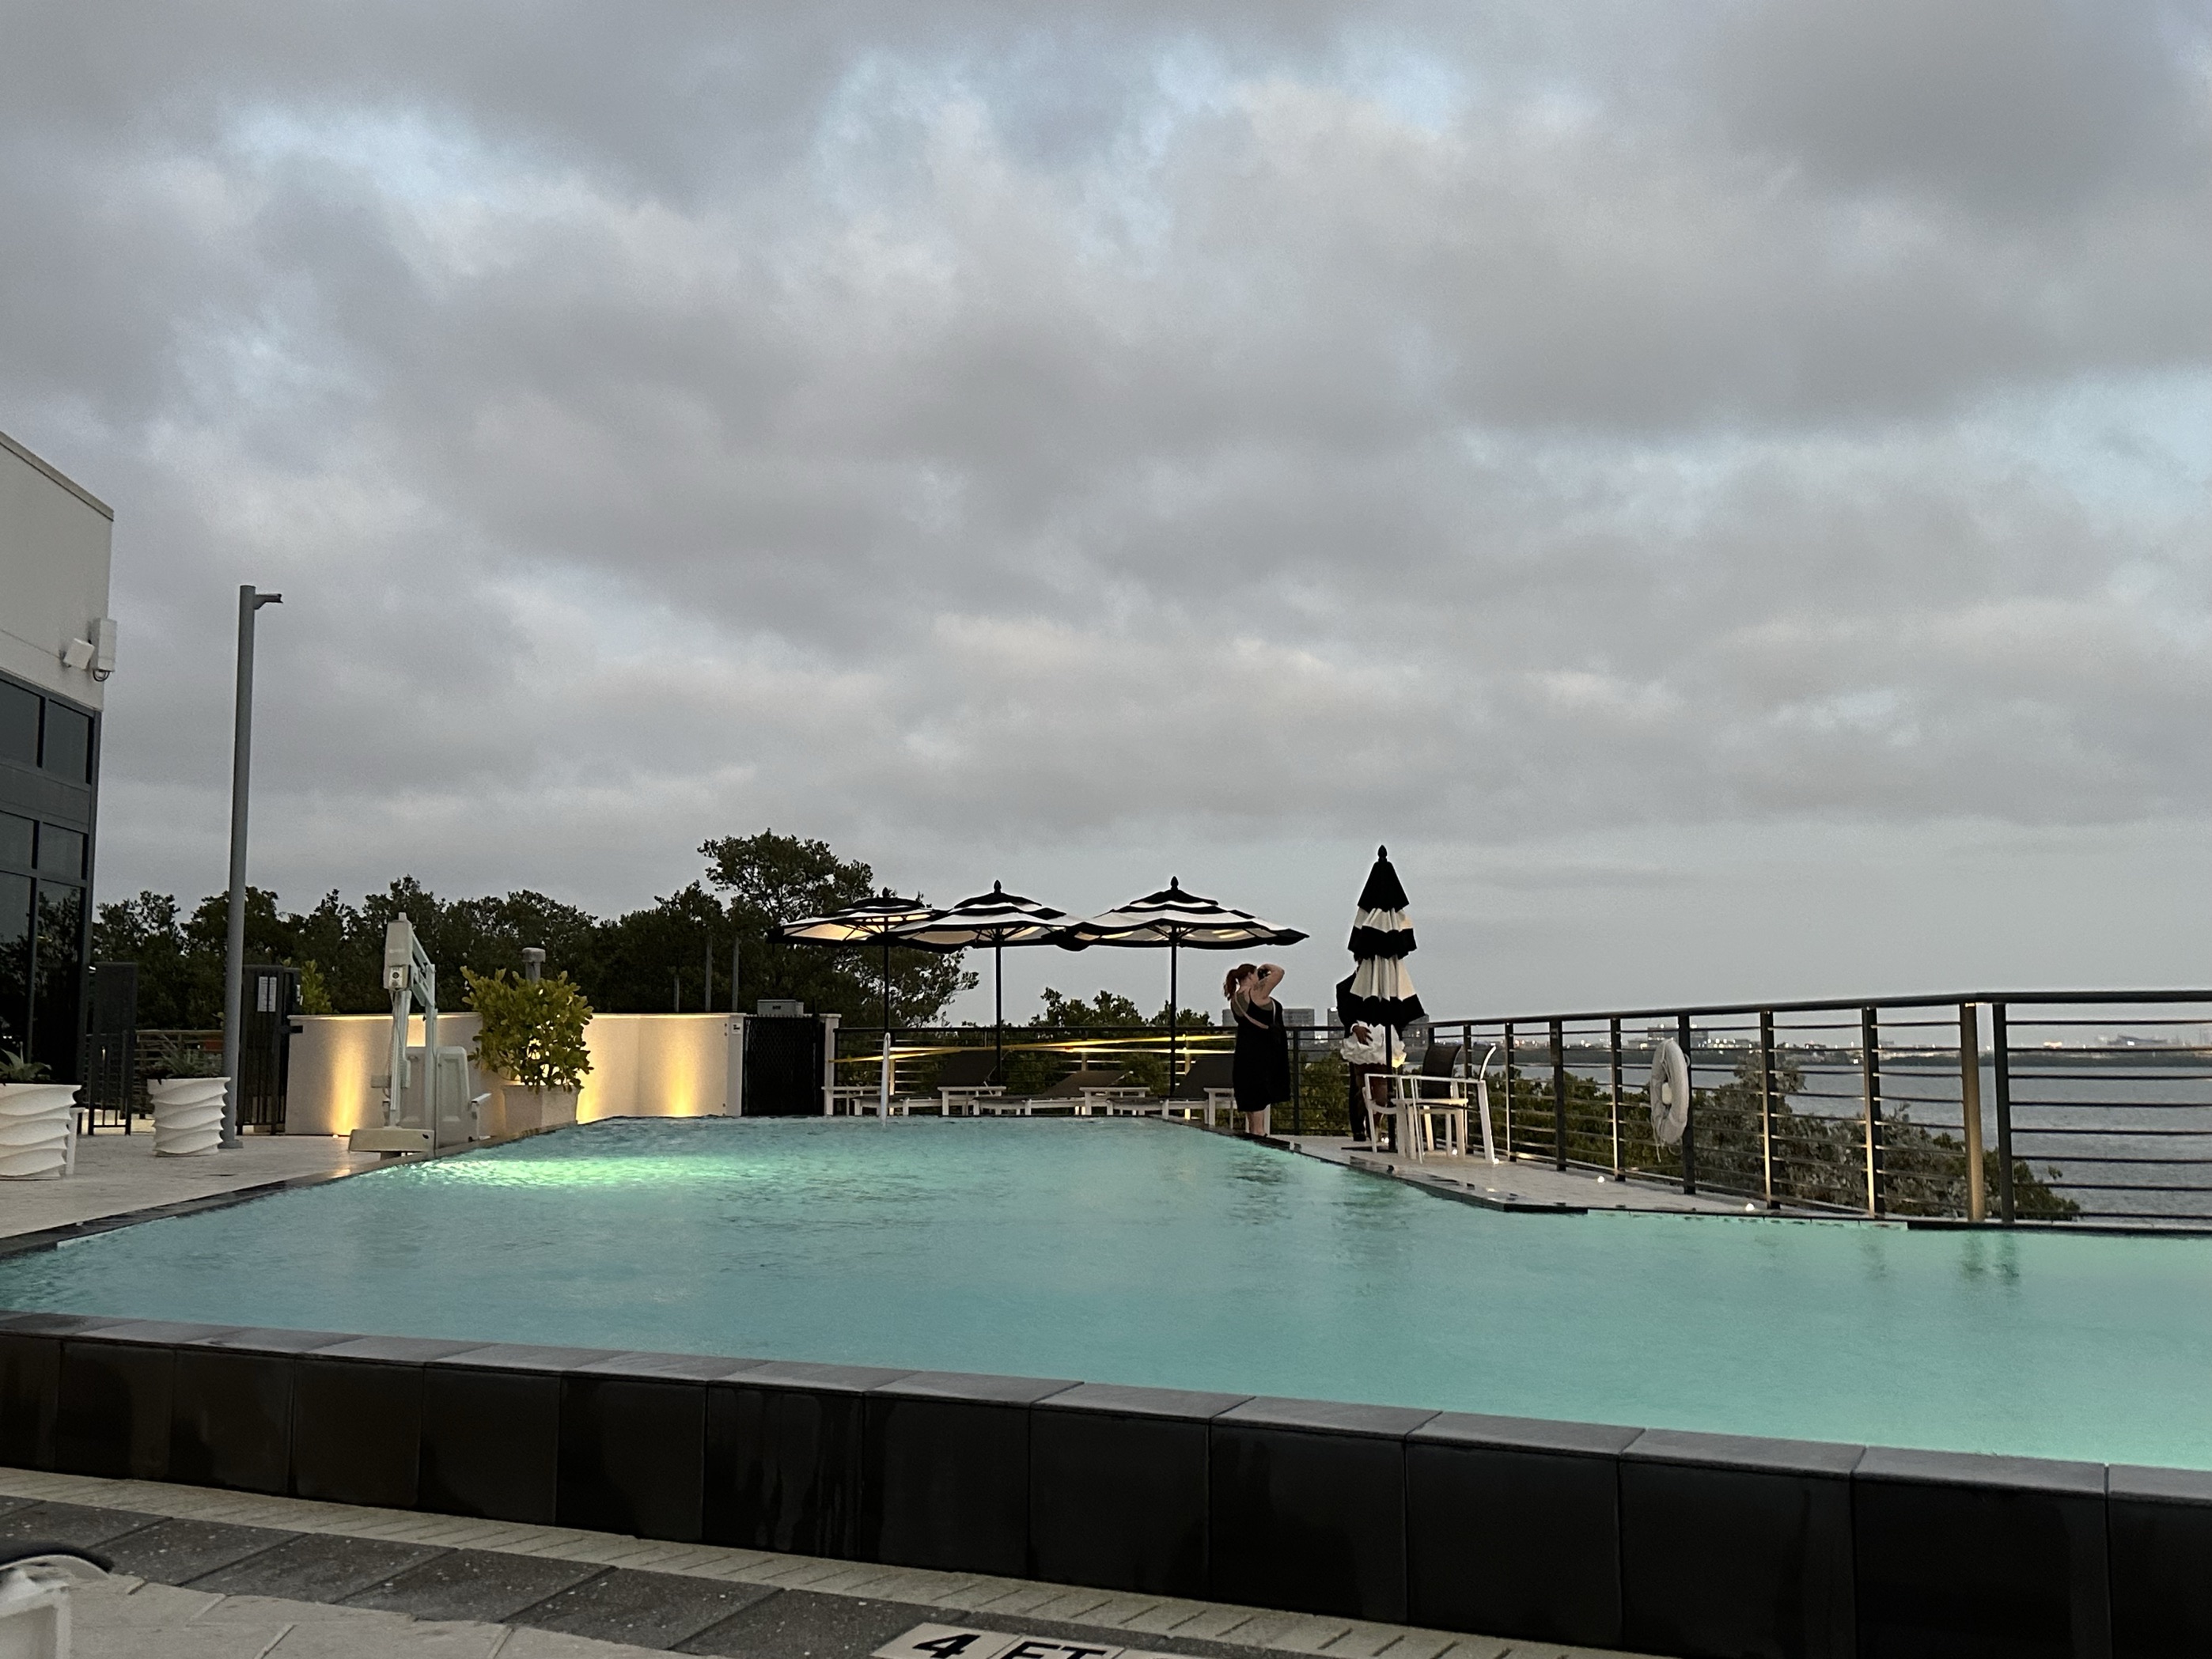 房间很新，酒店设施也是，露台上的泳池有温水且游泳的客人不多。海景和晚霞很美，房间是看日落的地方